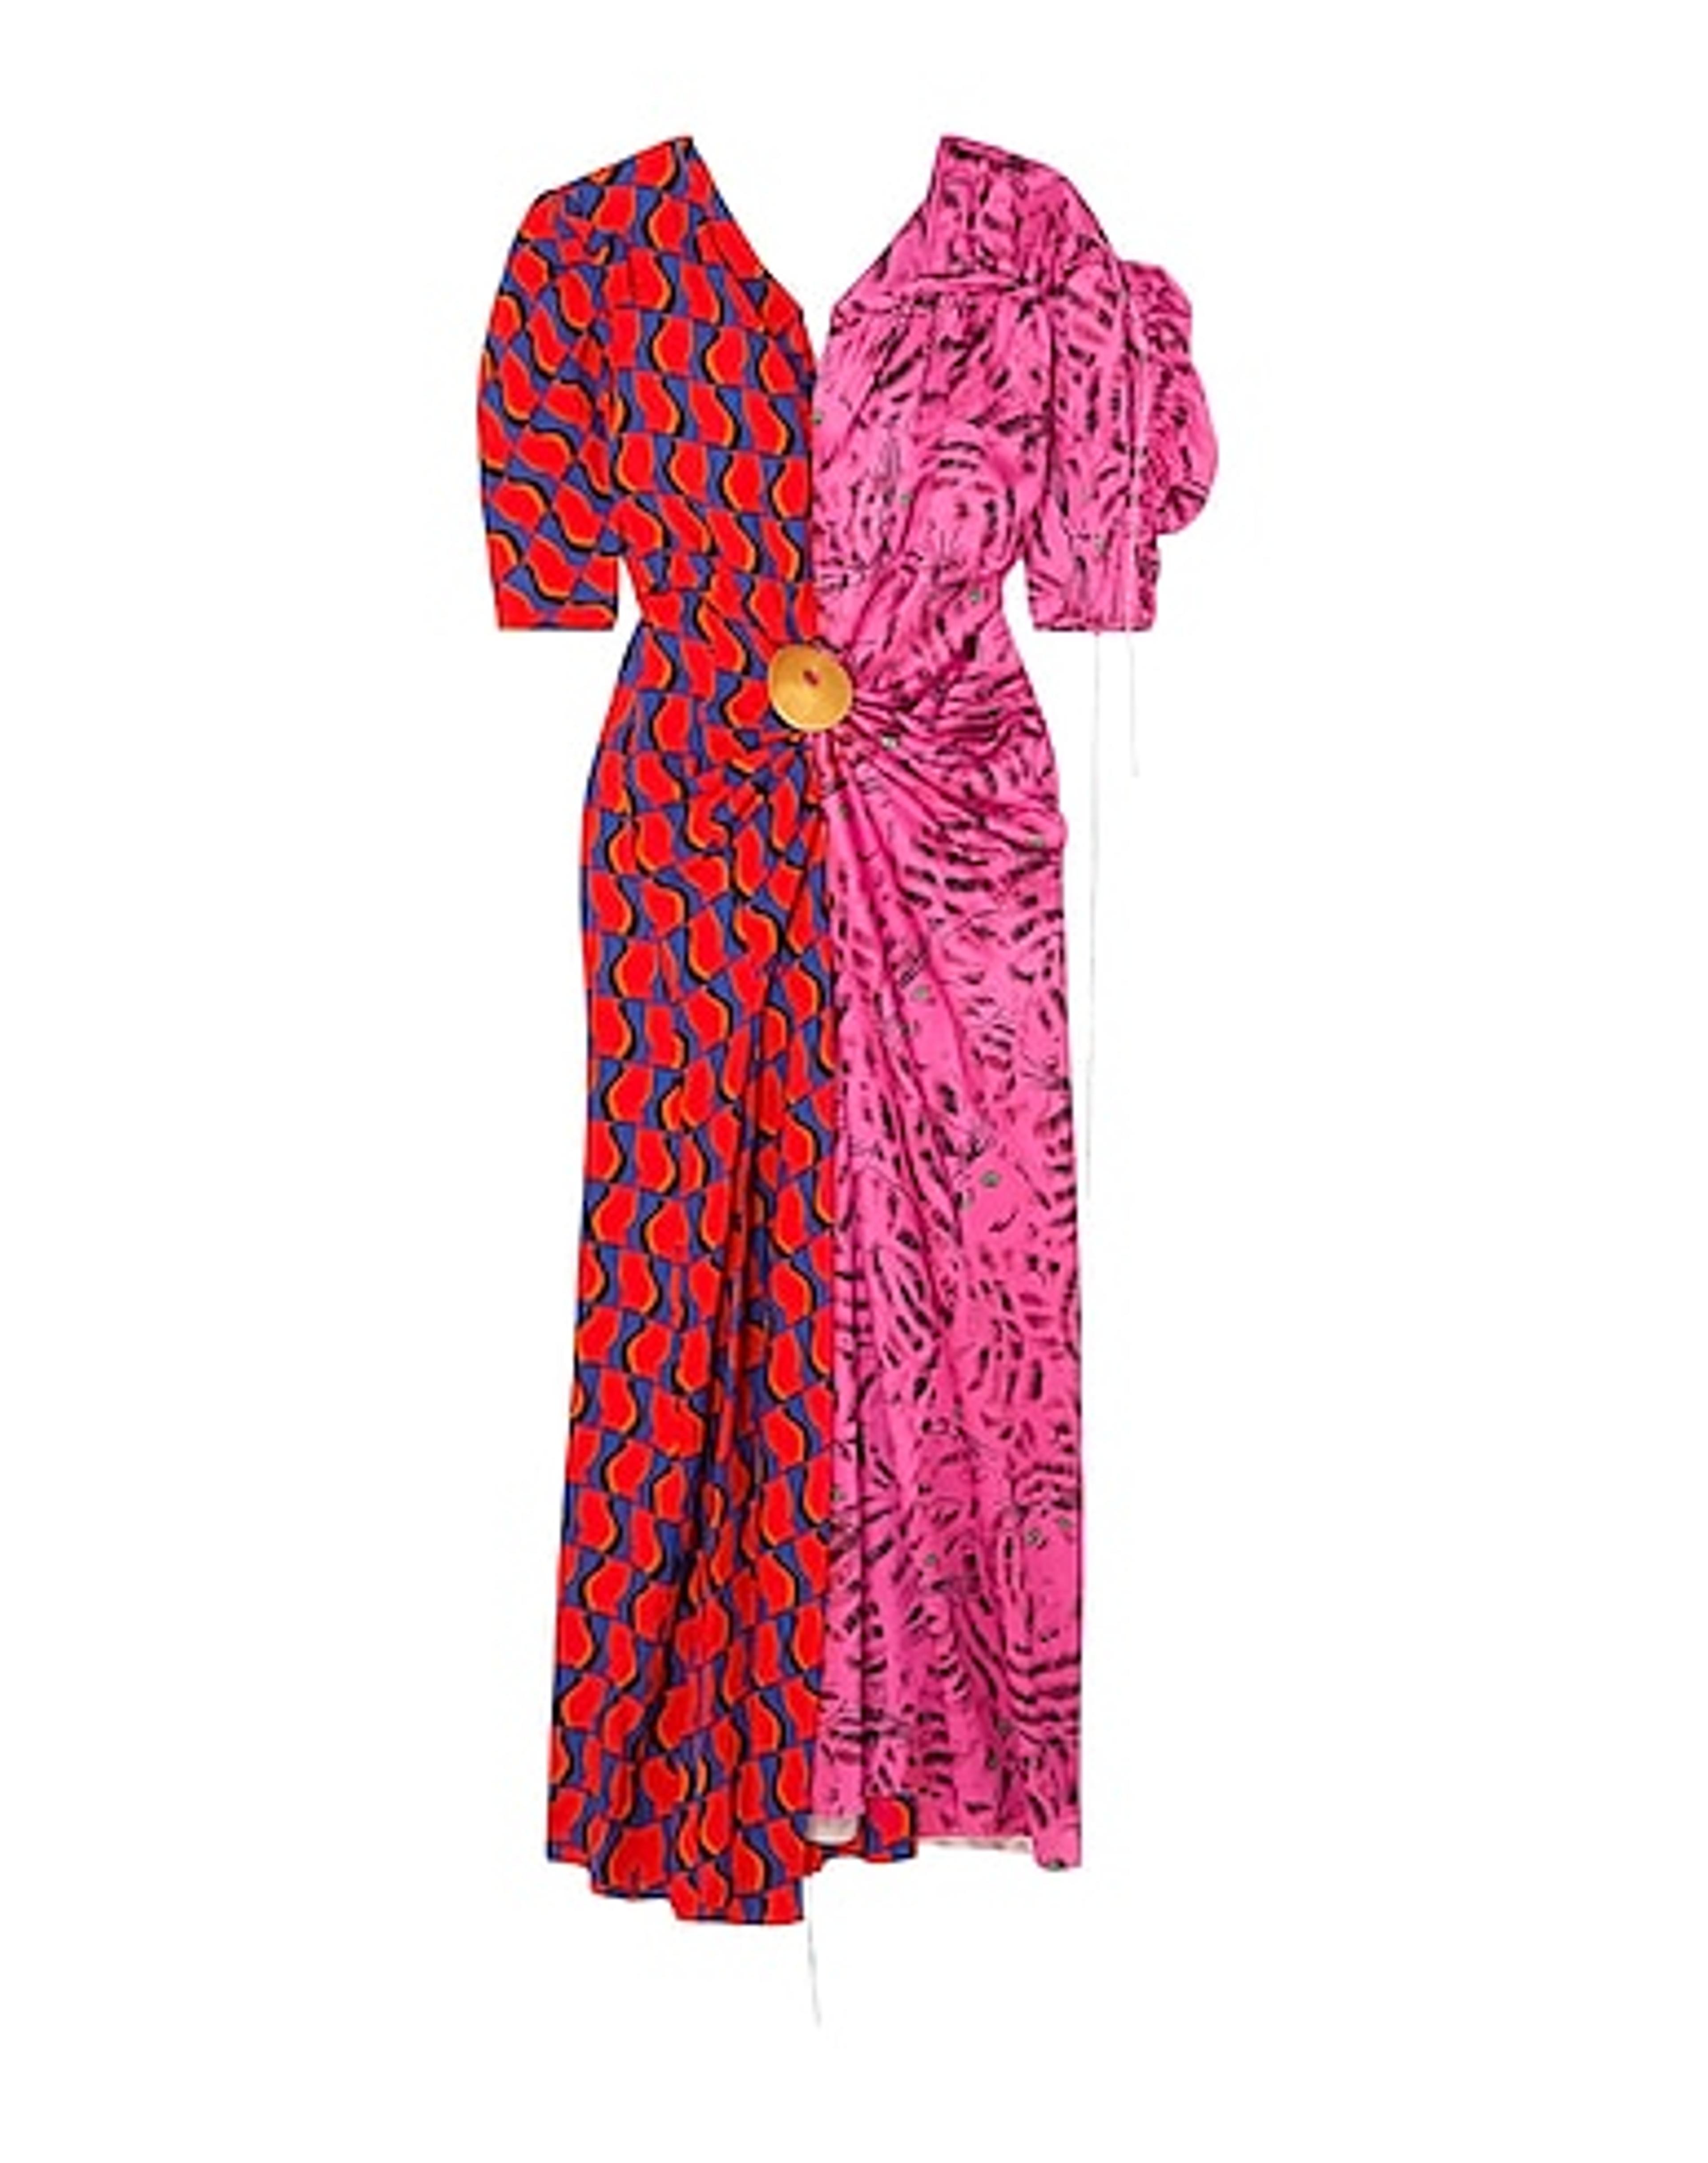 MARNI | Fuchsia Women‘s Long Dress | YOOX